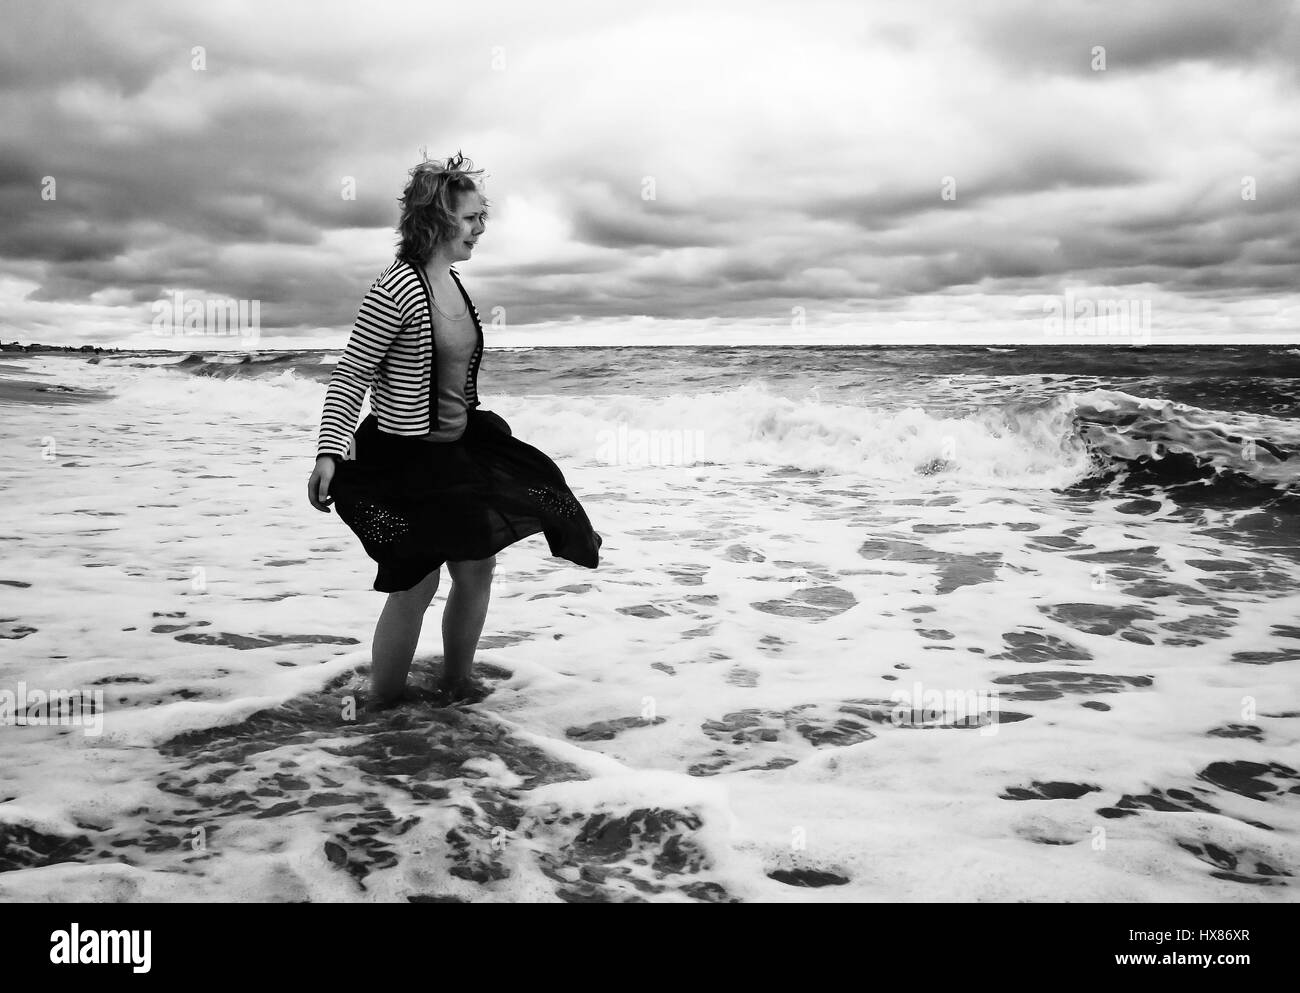 Une jeune femme en jupe gonflée est parmi la mer agitée avec des vagues, en  noir et blanc Photo Stock - Alamy